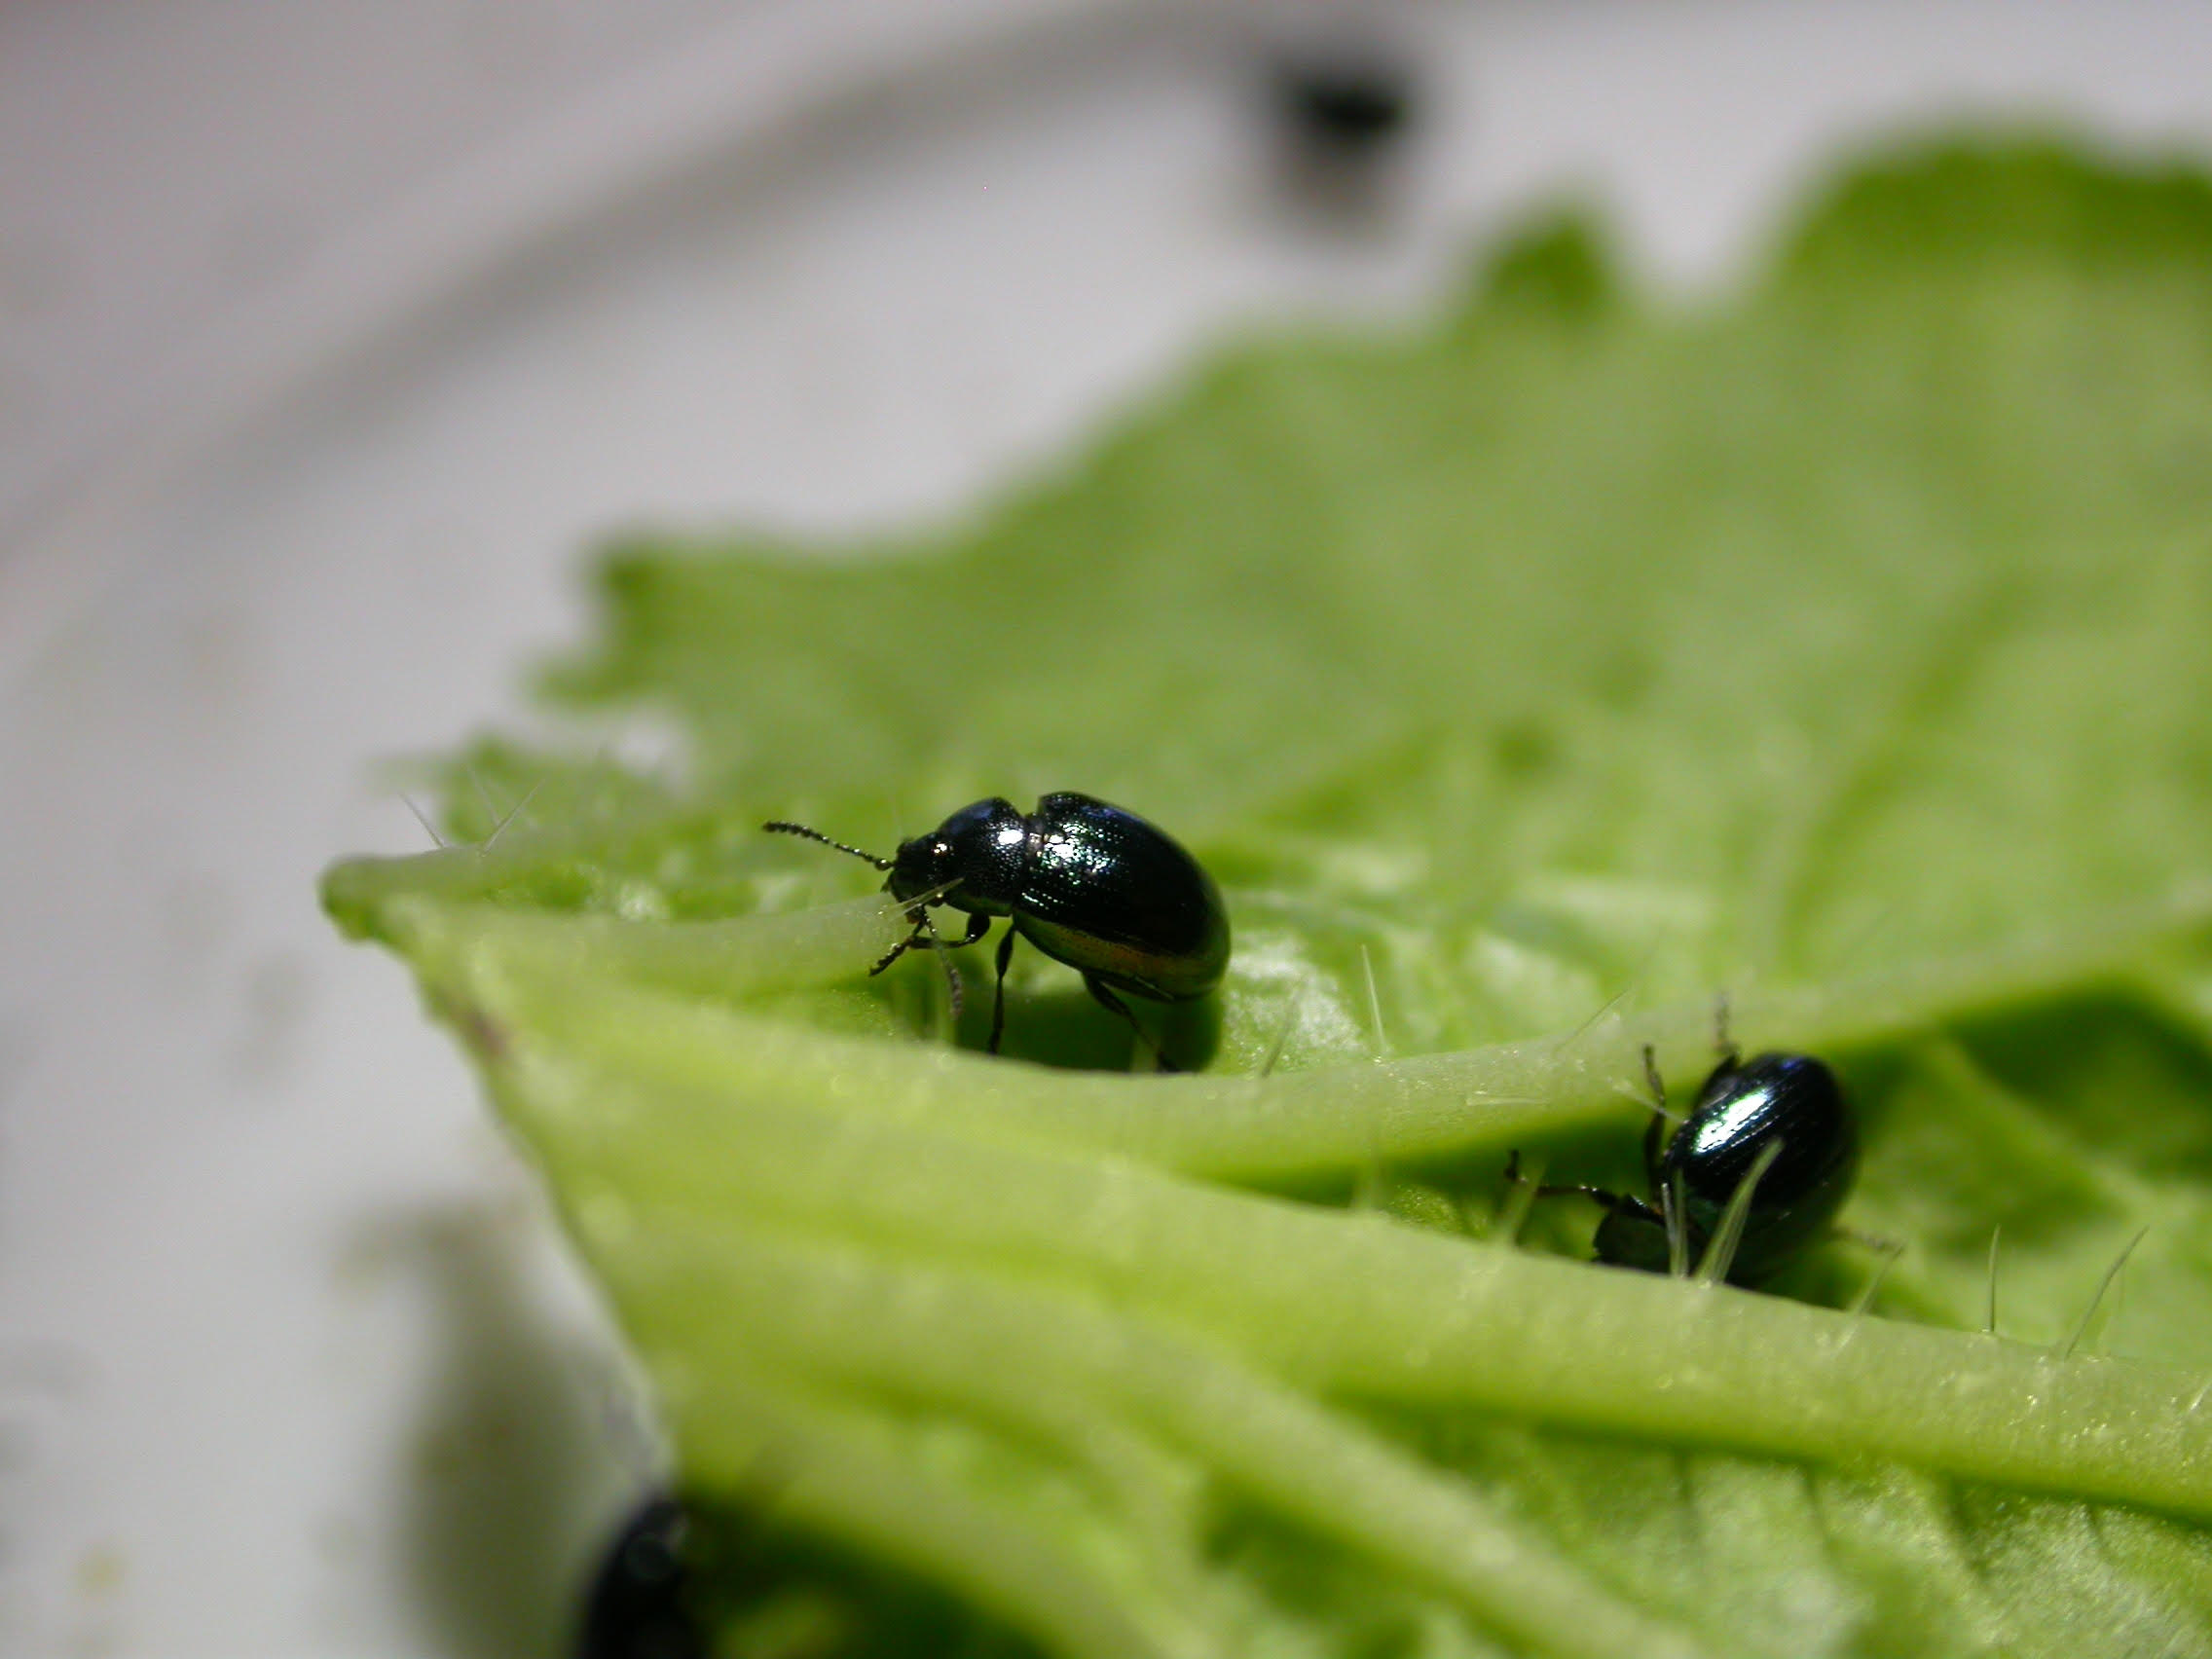 Auf dem Bild ist ein grünes Blatt mit zwei Käfern zu sehen.